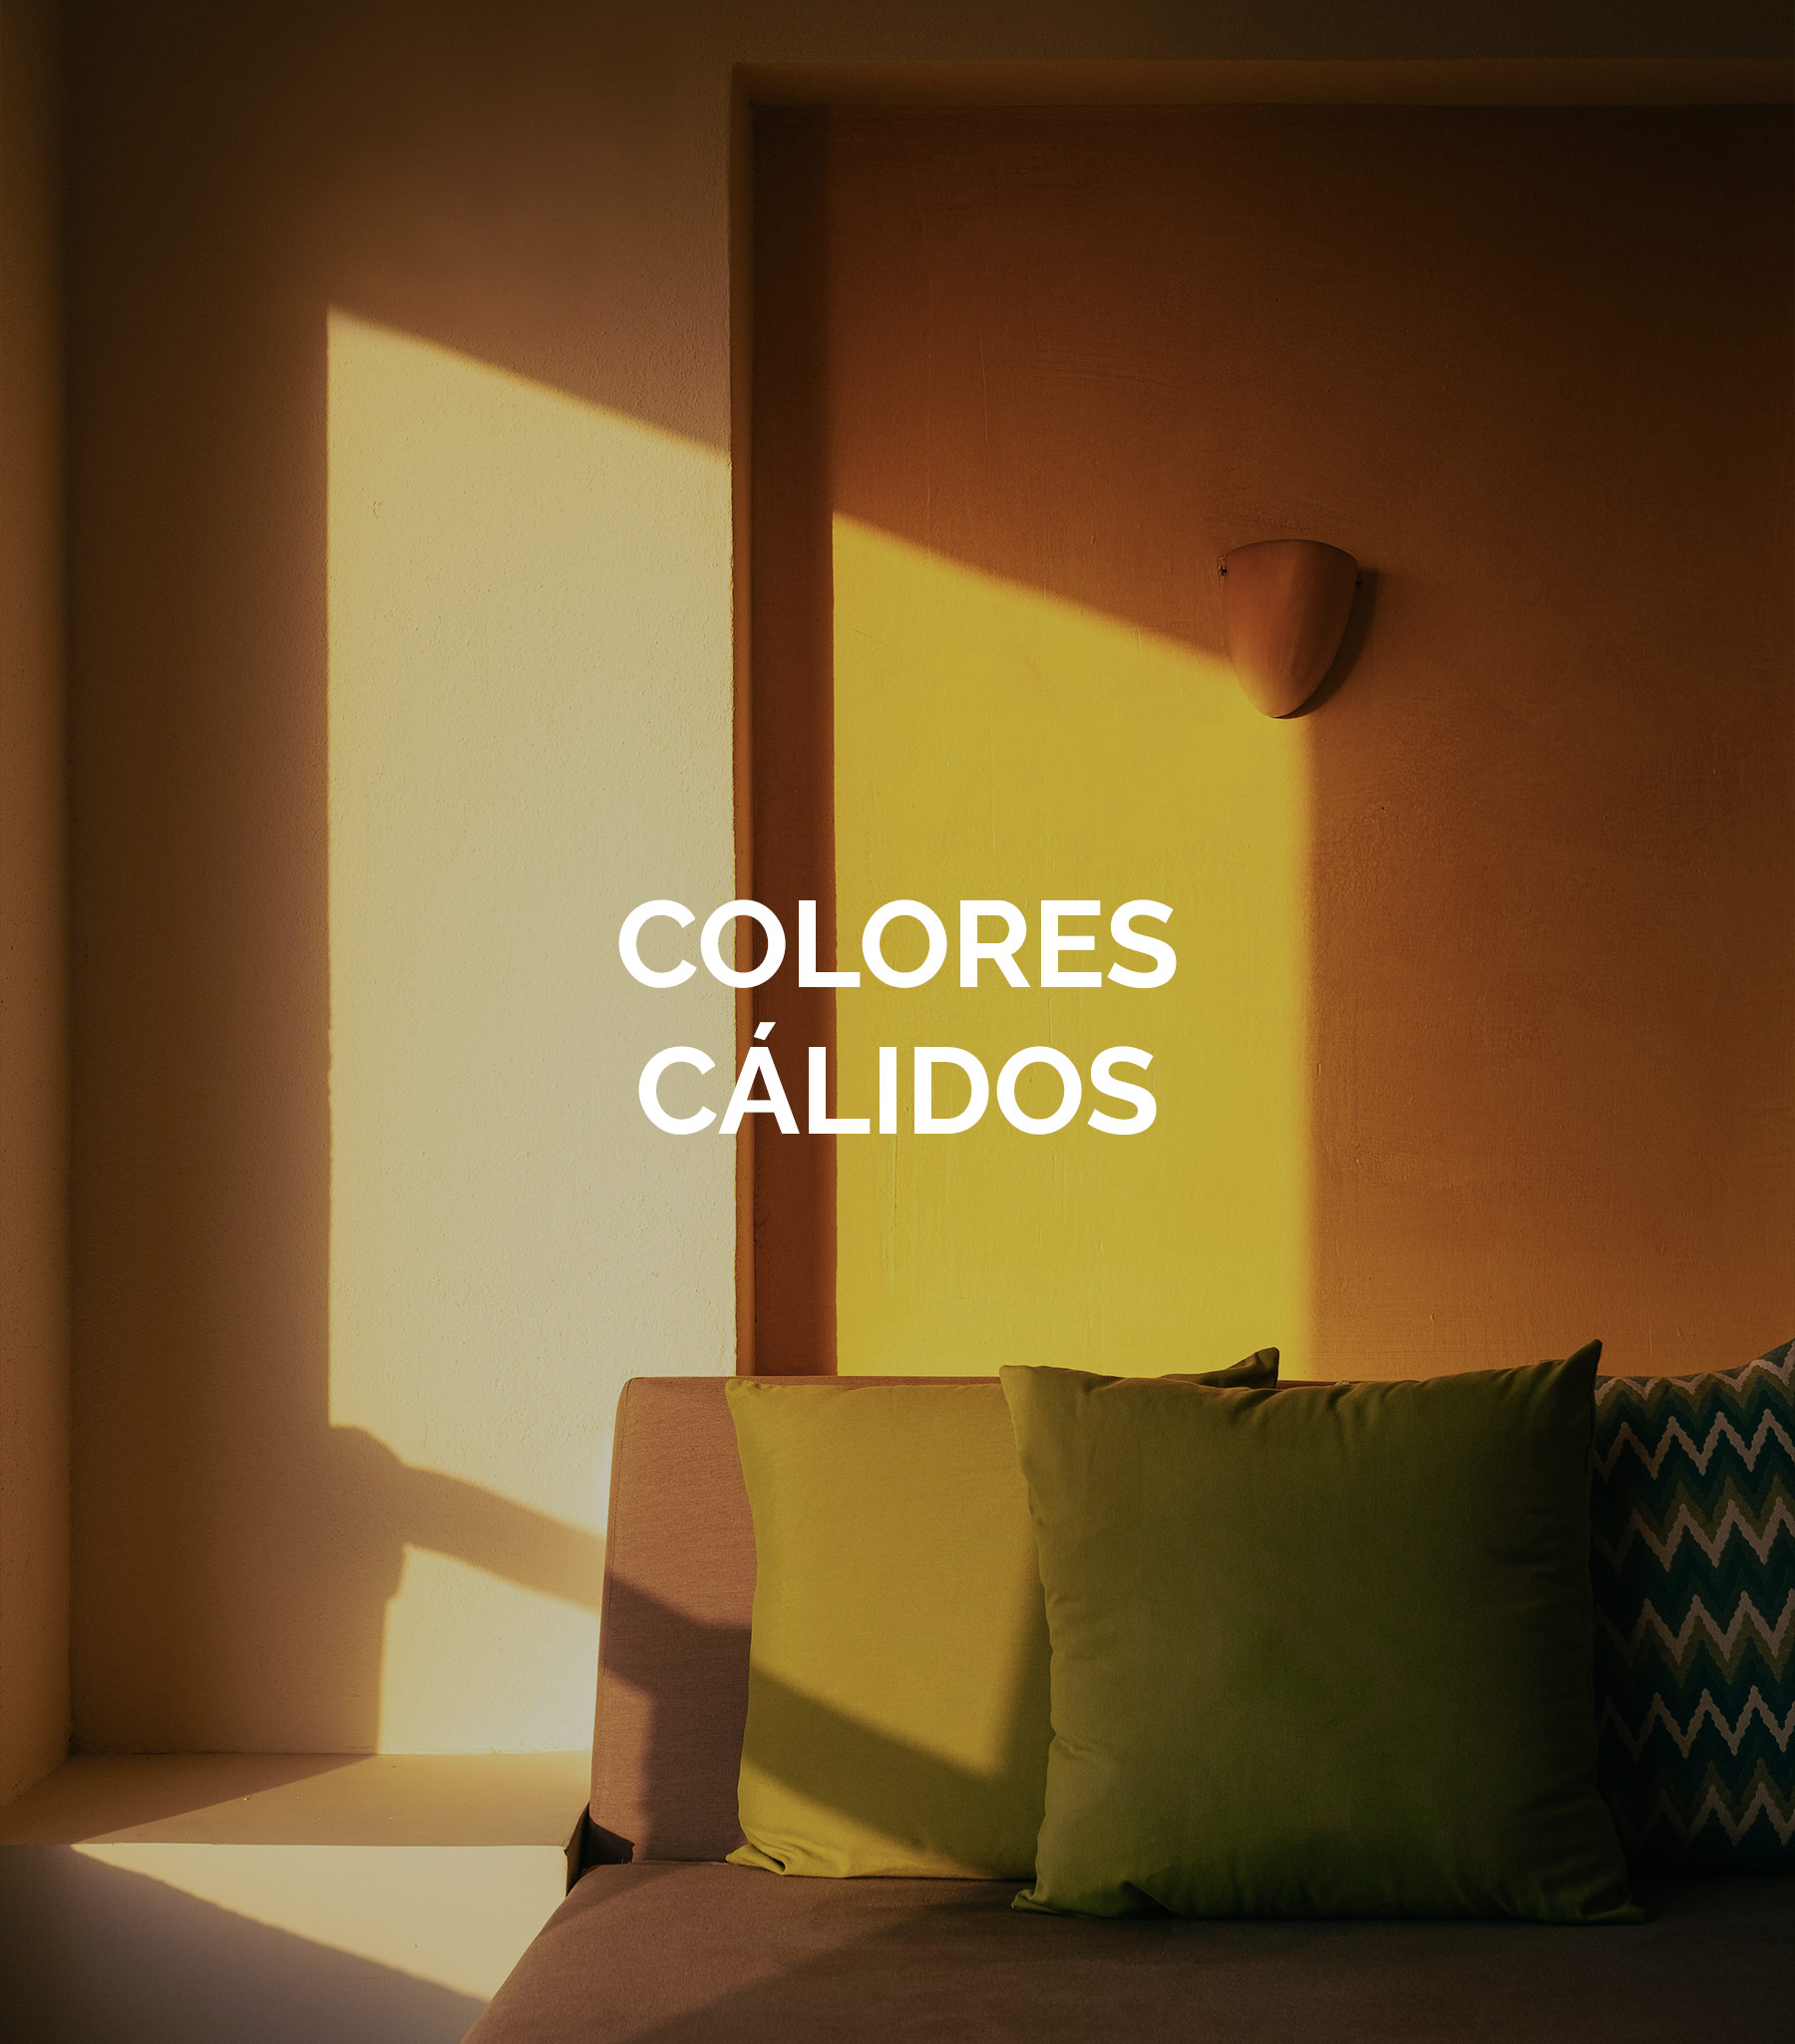 Decoración del hogar con colores cálidos - Uso de colores cálidos para decoración del hogar